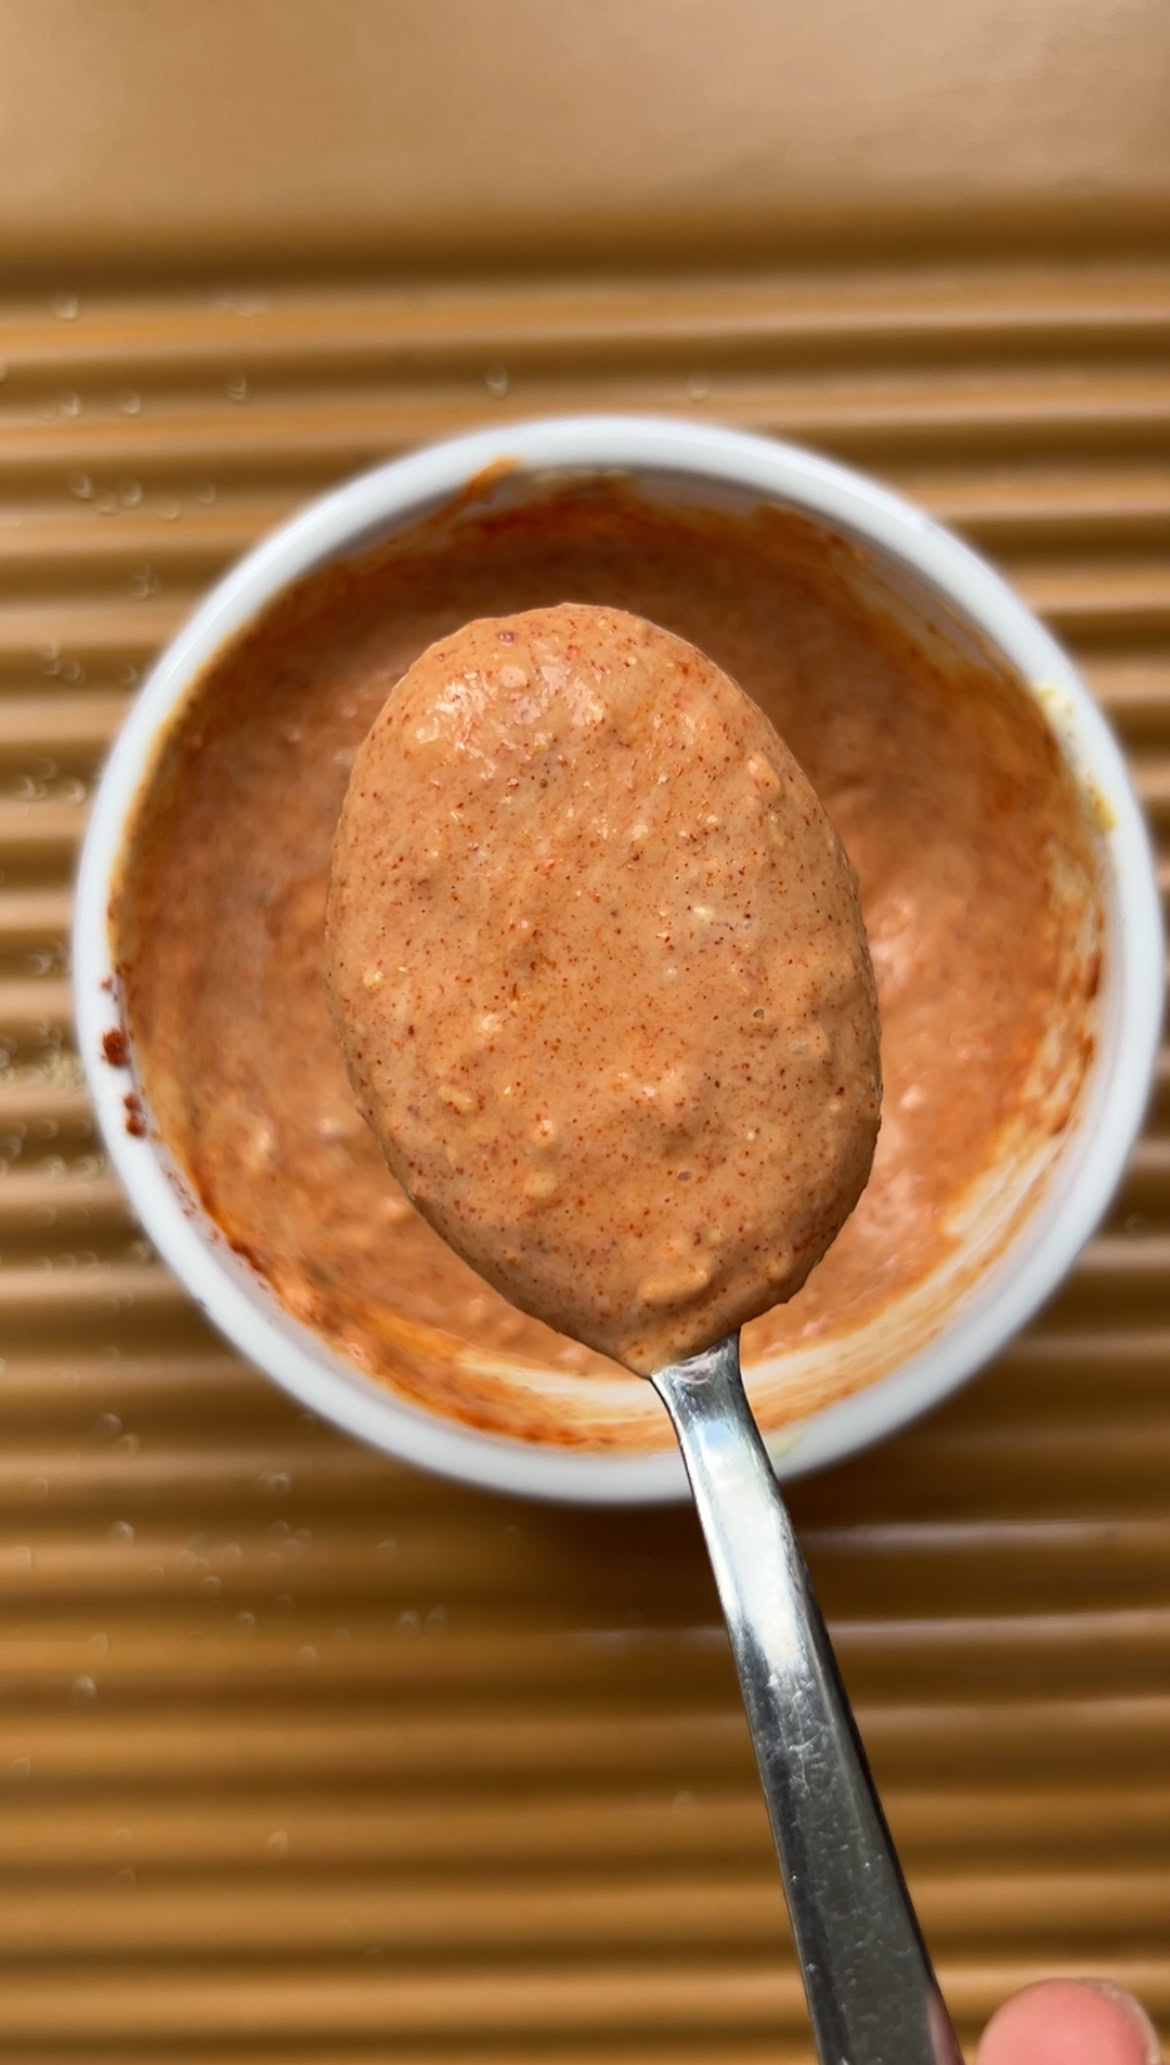 Sauce mélangée et un peu de sauce tenue par une cuillère à café, au dessus du bol.